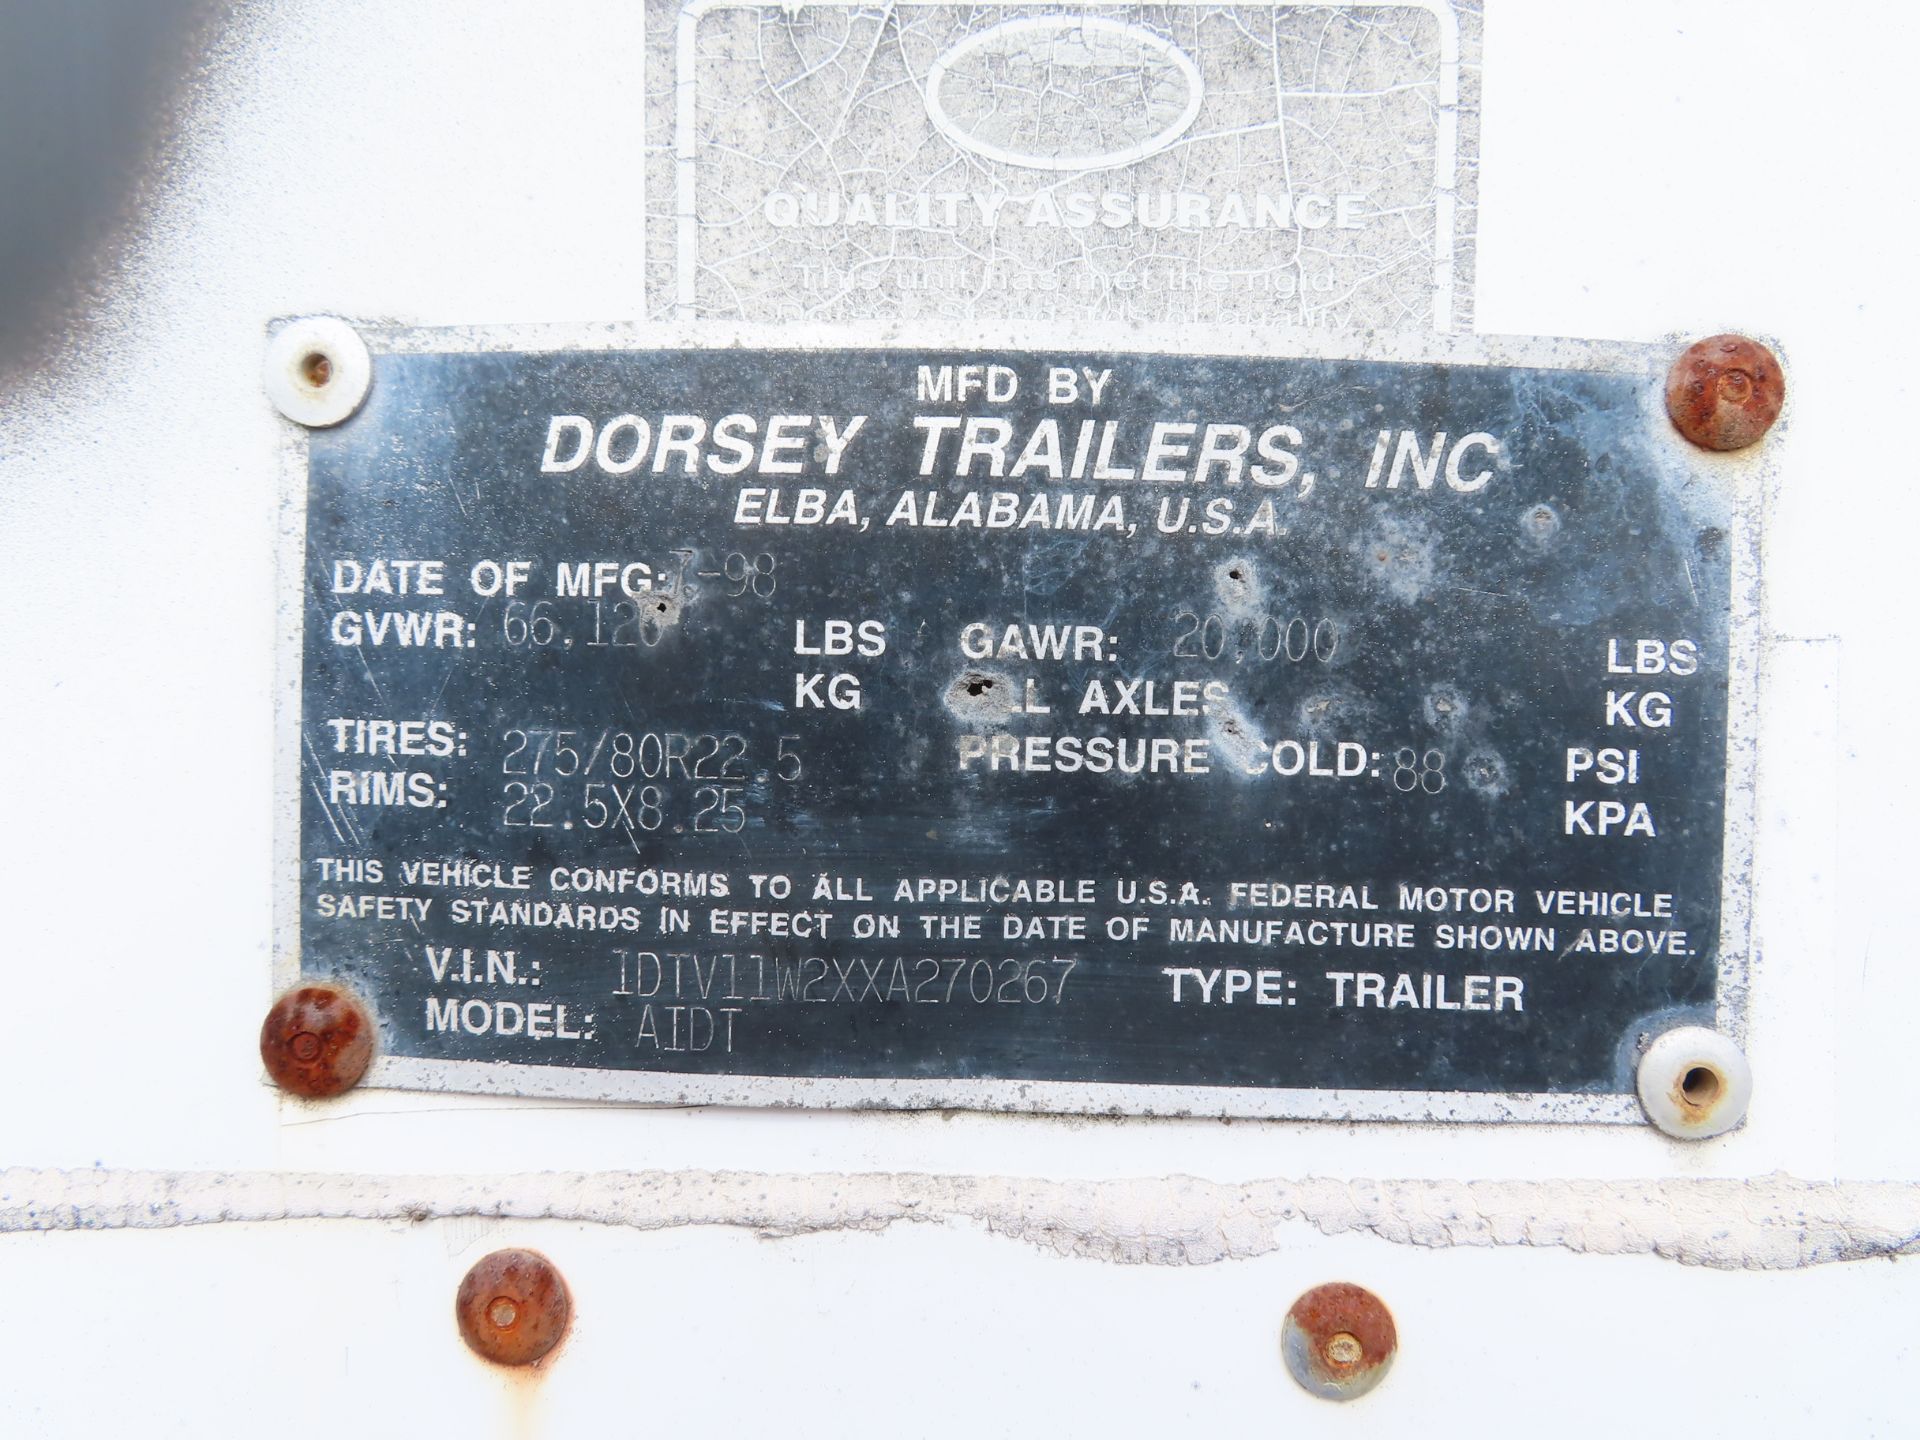 1999 Dorsey 45' Semi Dry Van Trailer, model AIDT, 2 axle, VIN: 1DTV11W2XA270267, GAWR 20,000 lb., - Image 4 of 4